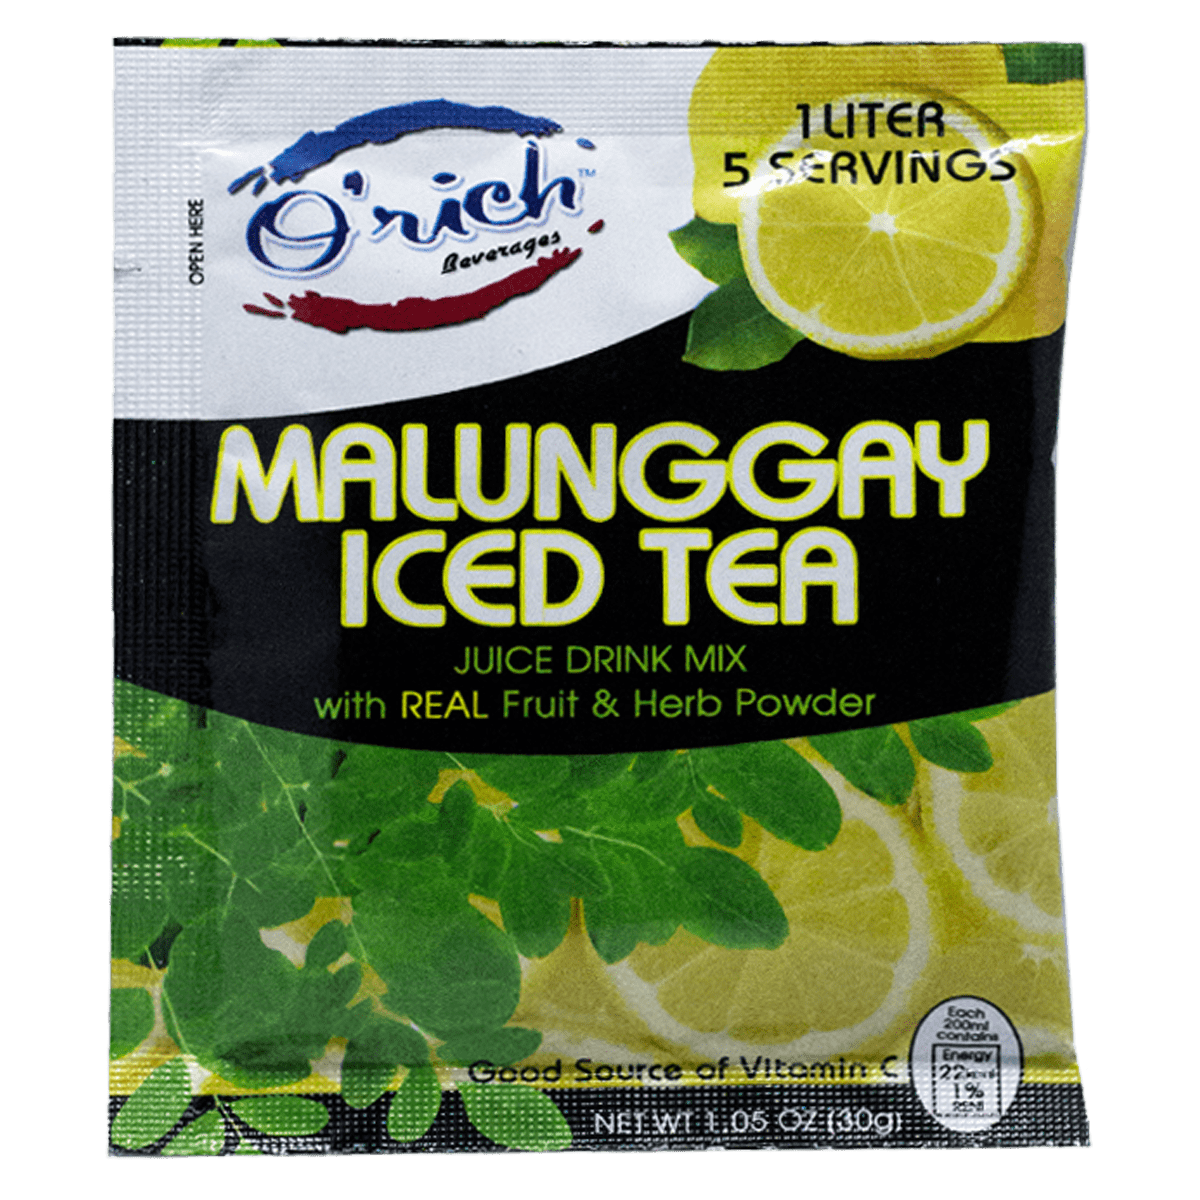 Orich Malunggay Iced Tea 1 Liter pack, 30g